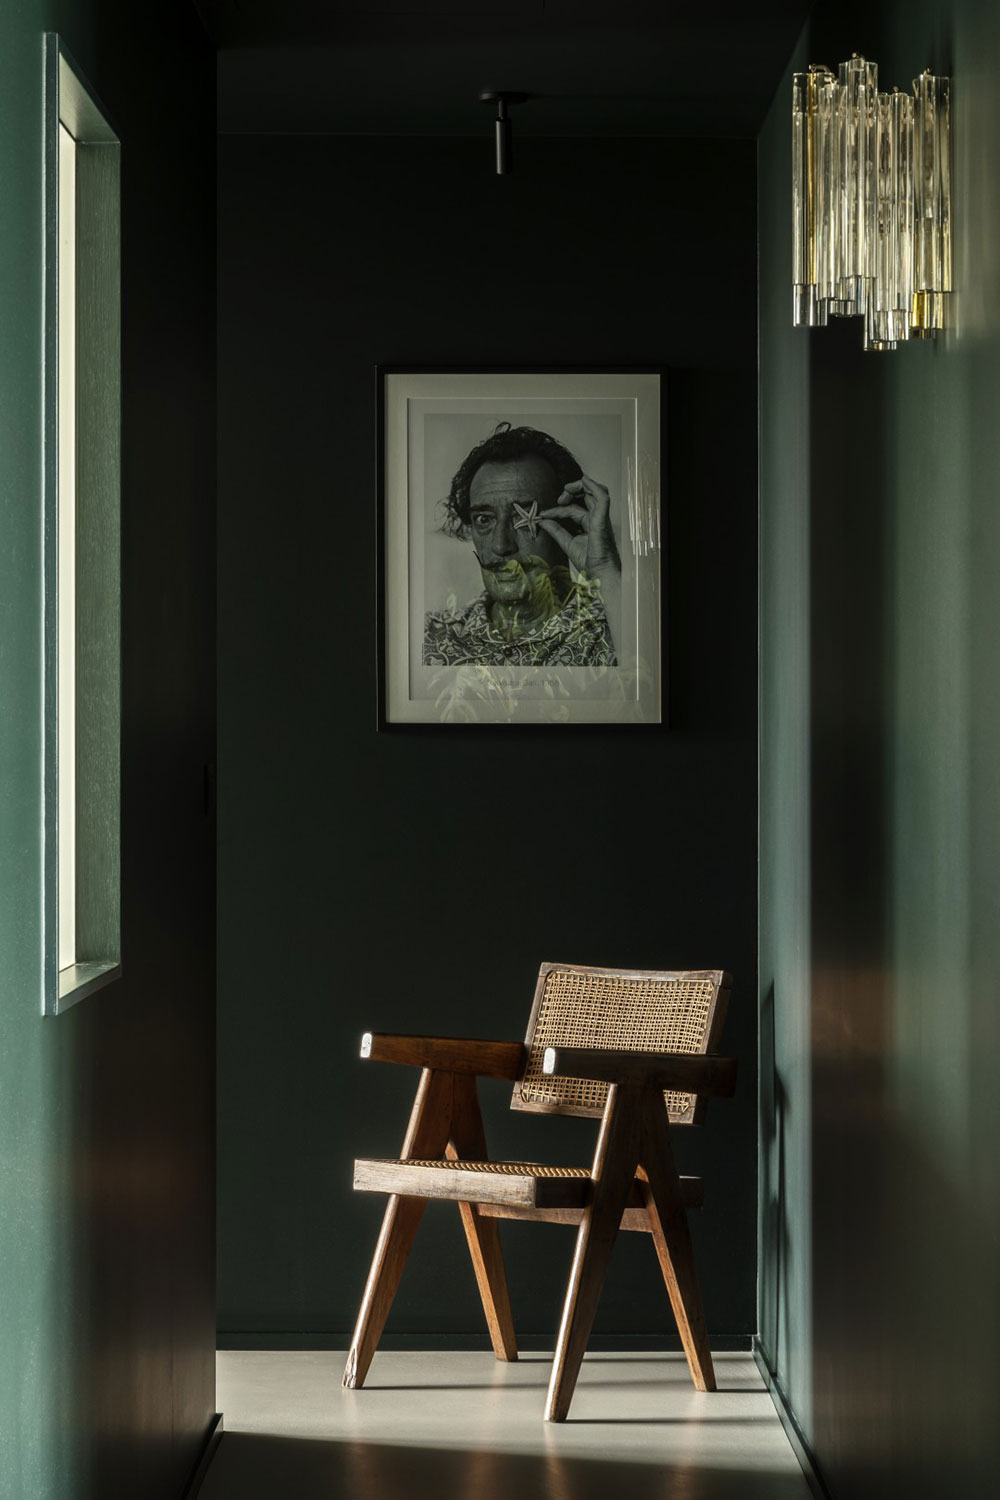 Стильный бельгийский минимализм: лаконичная квартира в Брюсселе